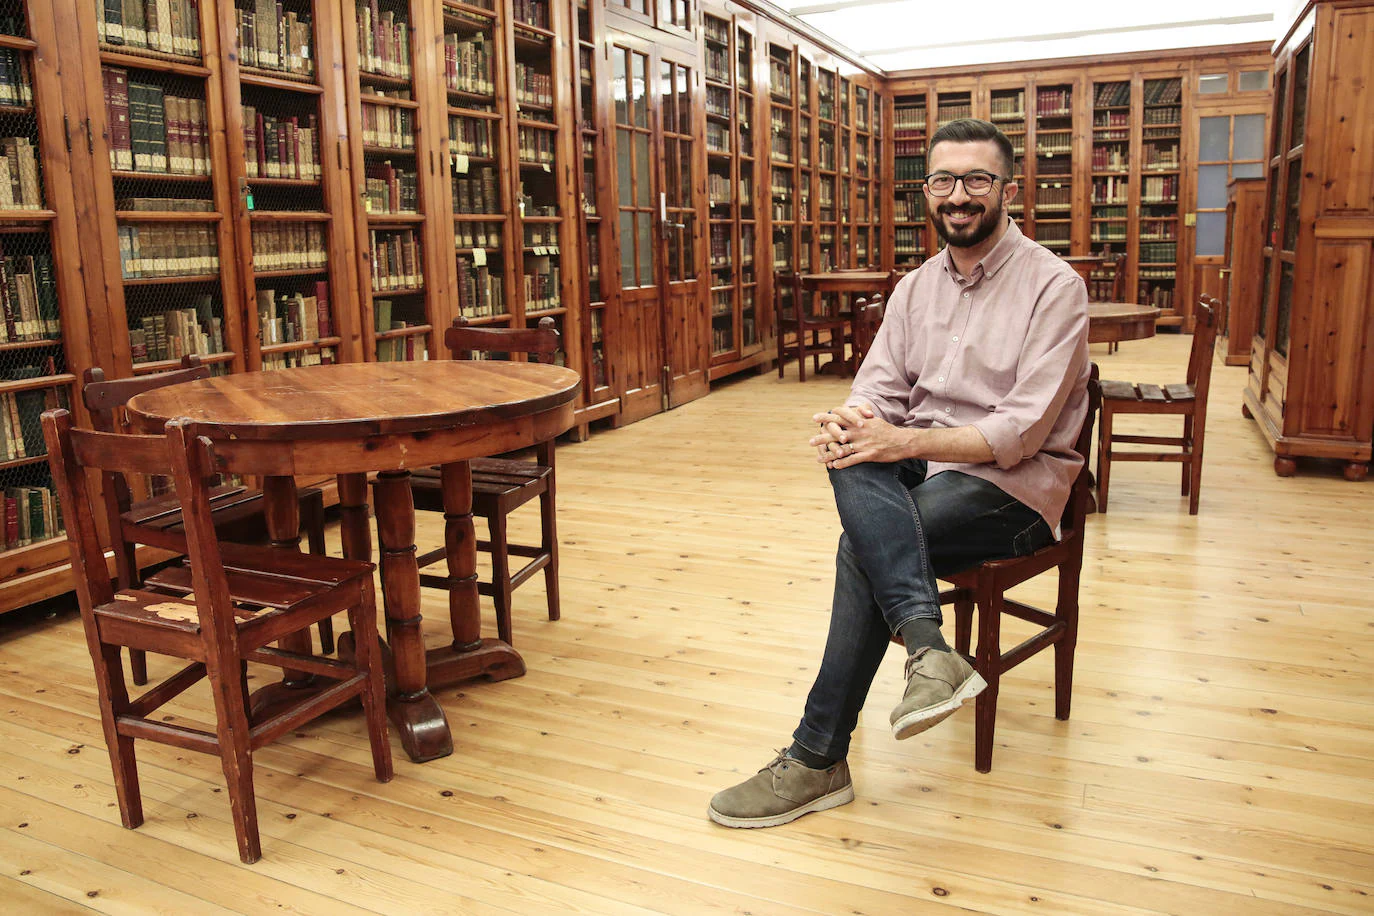 Se cumplen 100 años de la creación de la Biblioteca de Azcárate, ubicada en la Fundación Sierra Pambley de León. En la imagen, el gerente de la Fundación Sierra Pambley, Mario de la Fuente.